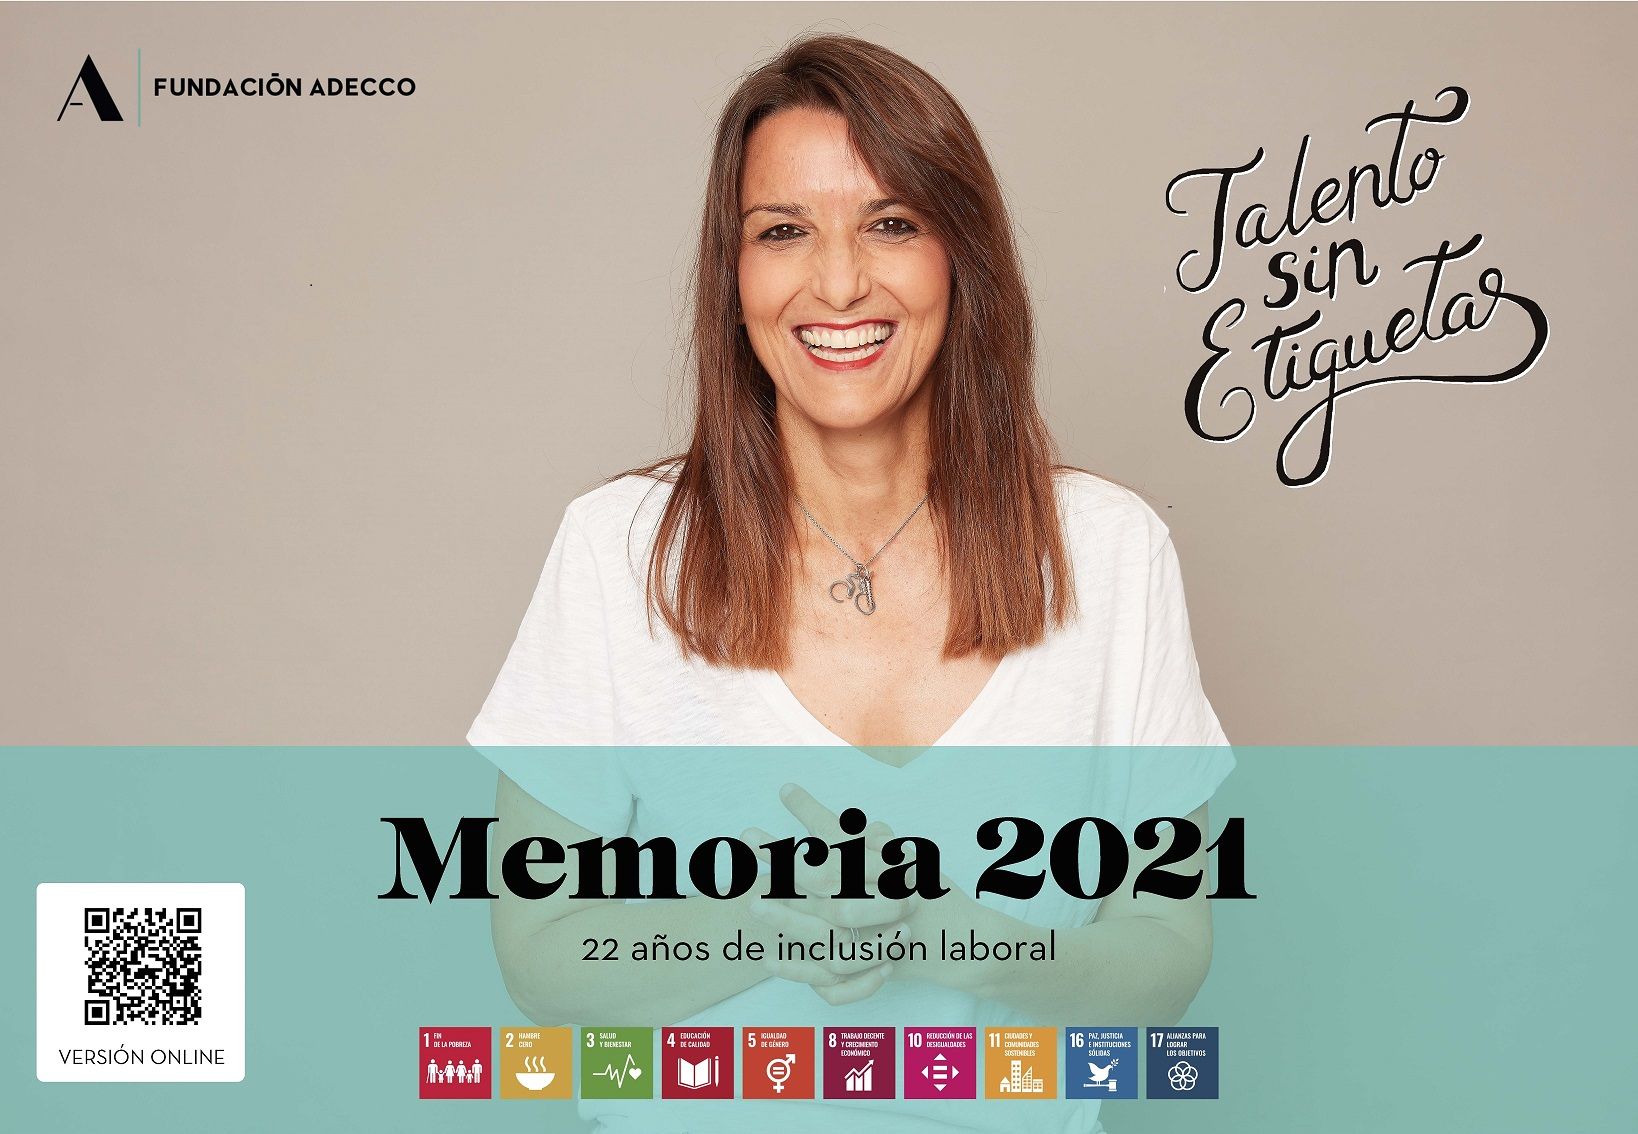 La Fundación Adecco presenta su Memoria de sostenibilidad 2021